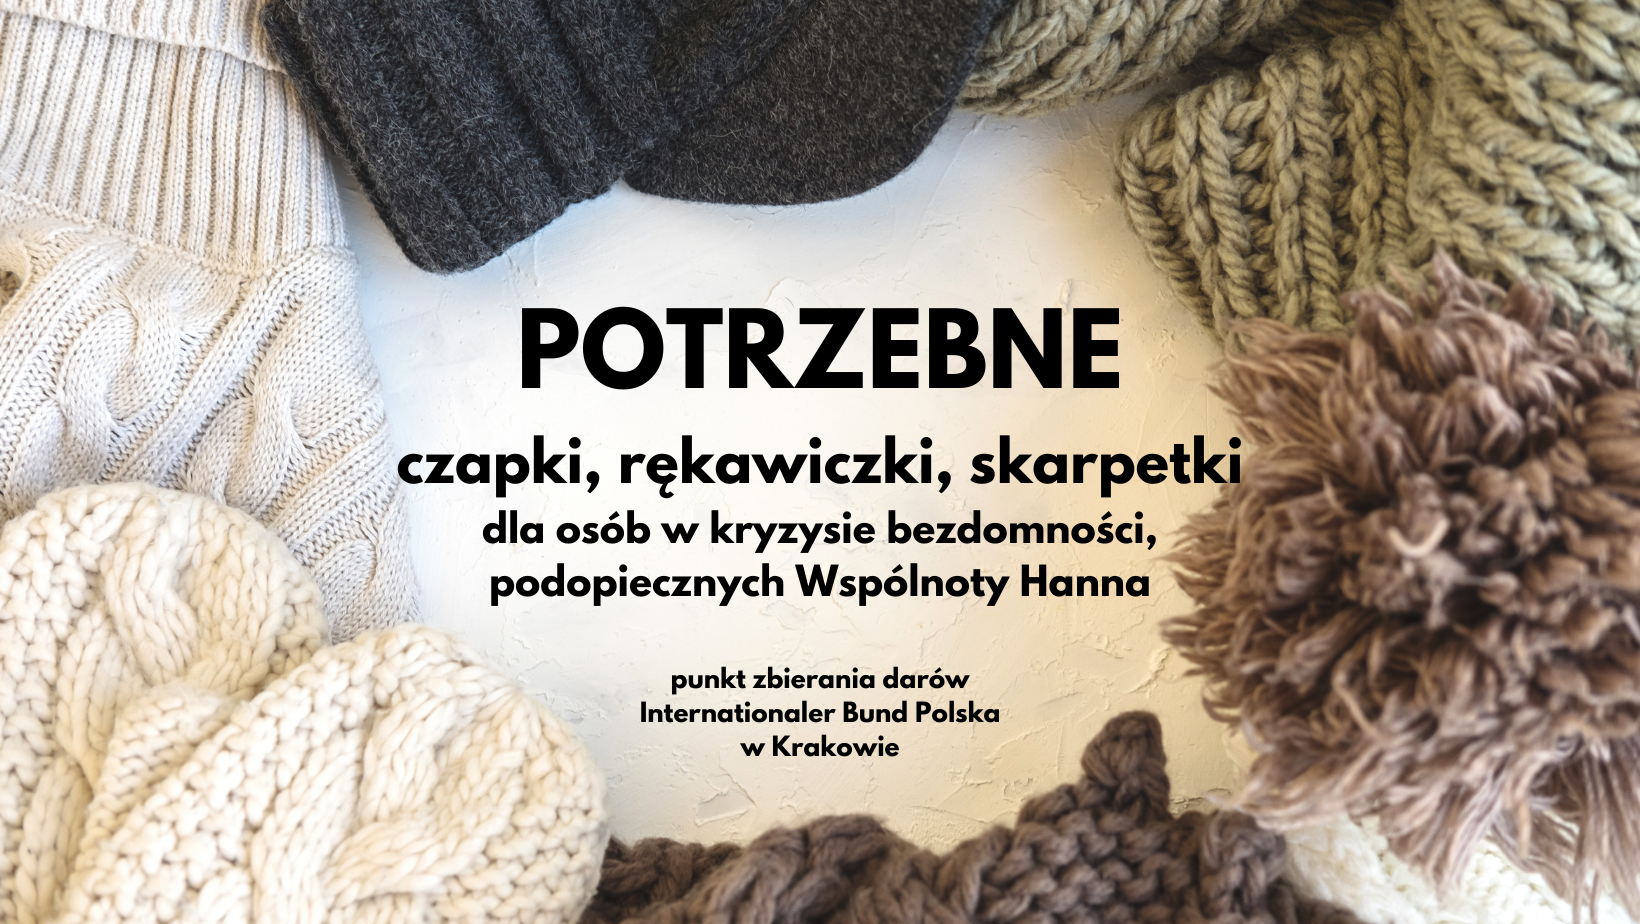 Potrzebne czapki, rękawiczki, skarpetki dla bezdomnych, podopiecznych Wspolnota Hanna IB Polska Krakow